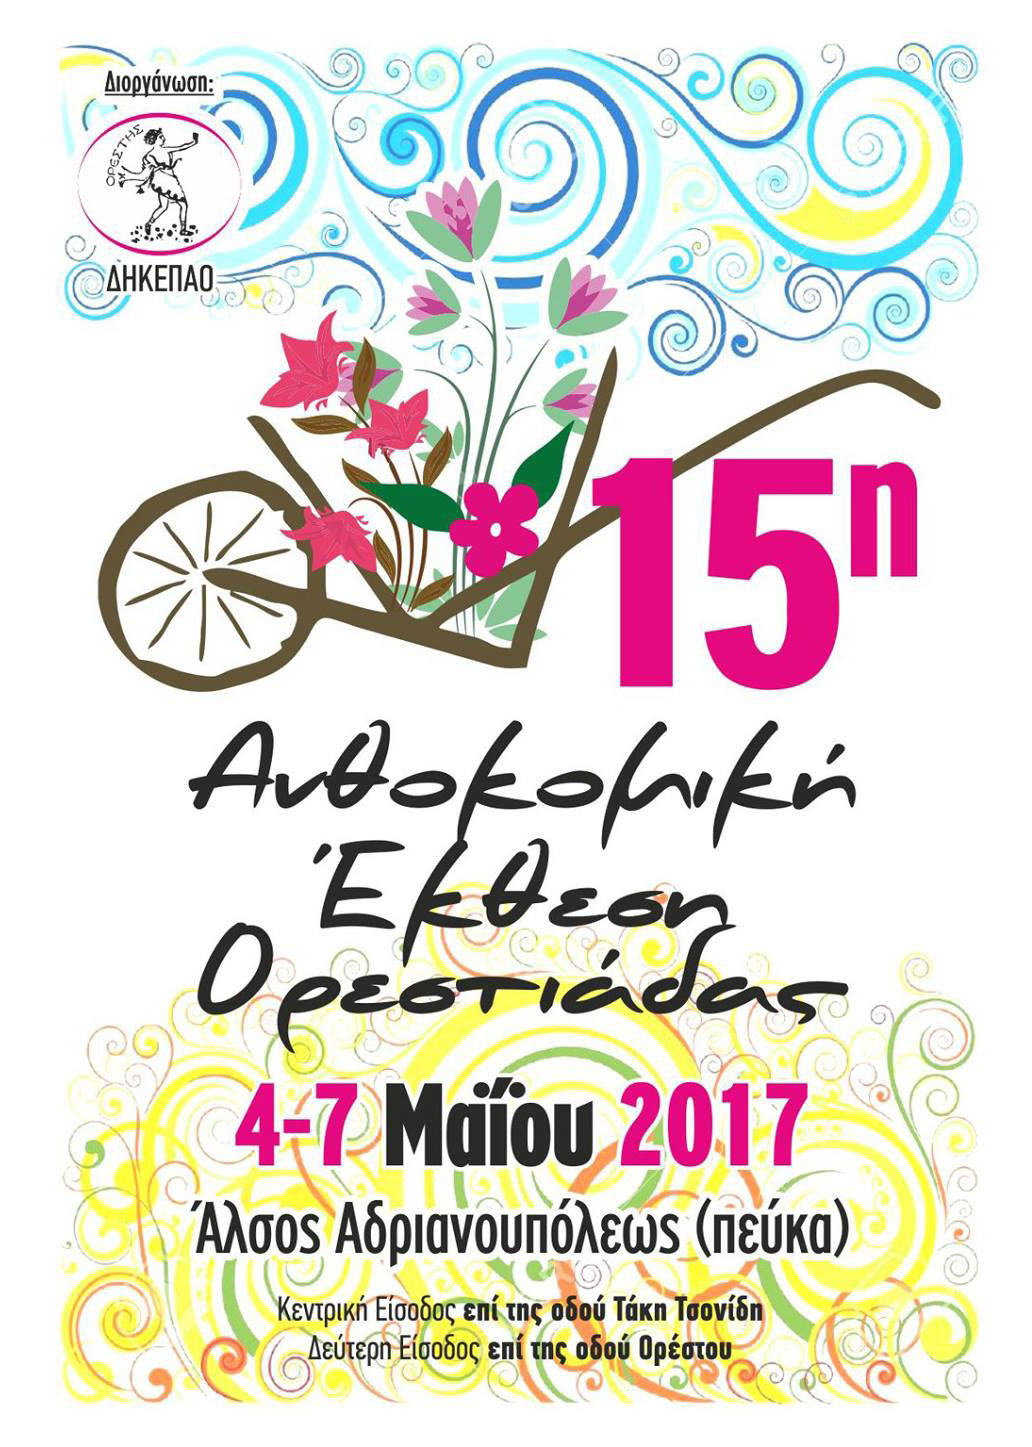 Συμμετοχή της Ζεόλιθος | Zeolife.gr στη 15η ανθοκομική έκθεση Νέας Ορεστιάδας, 4 έως 7 Μαΐου 2017